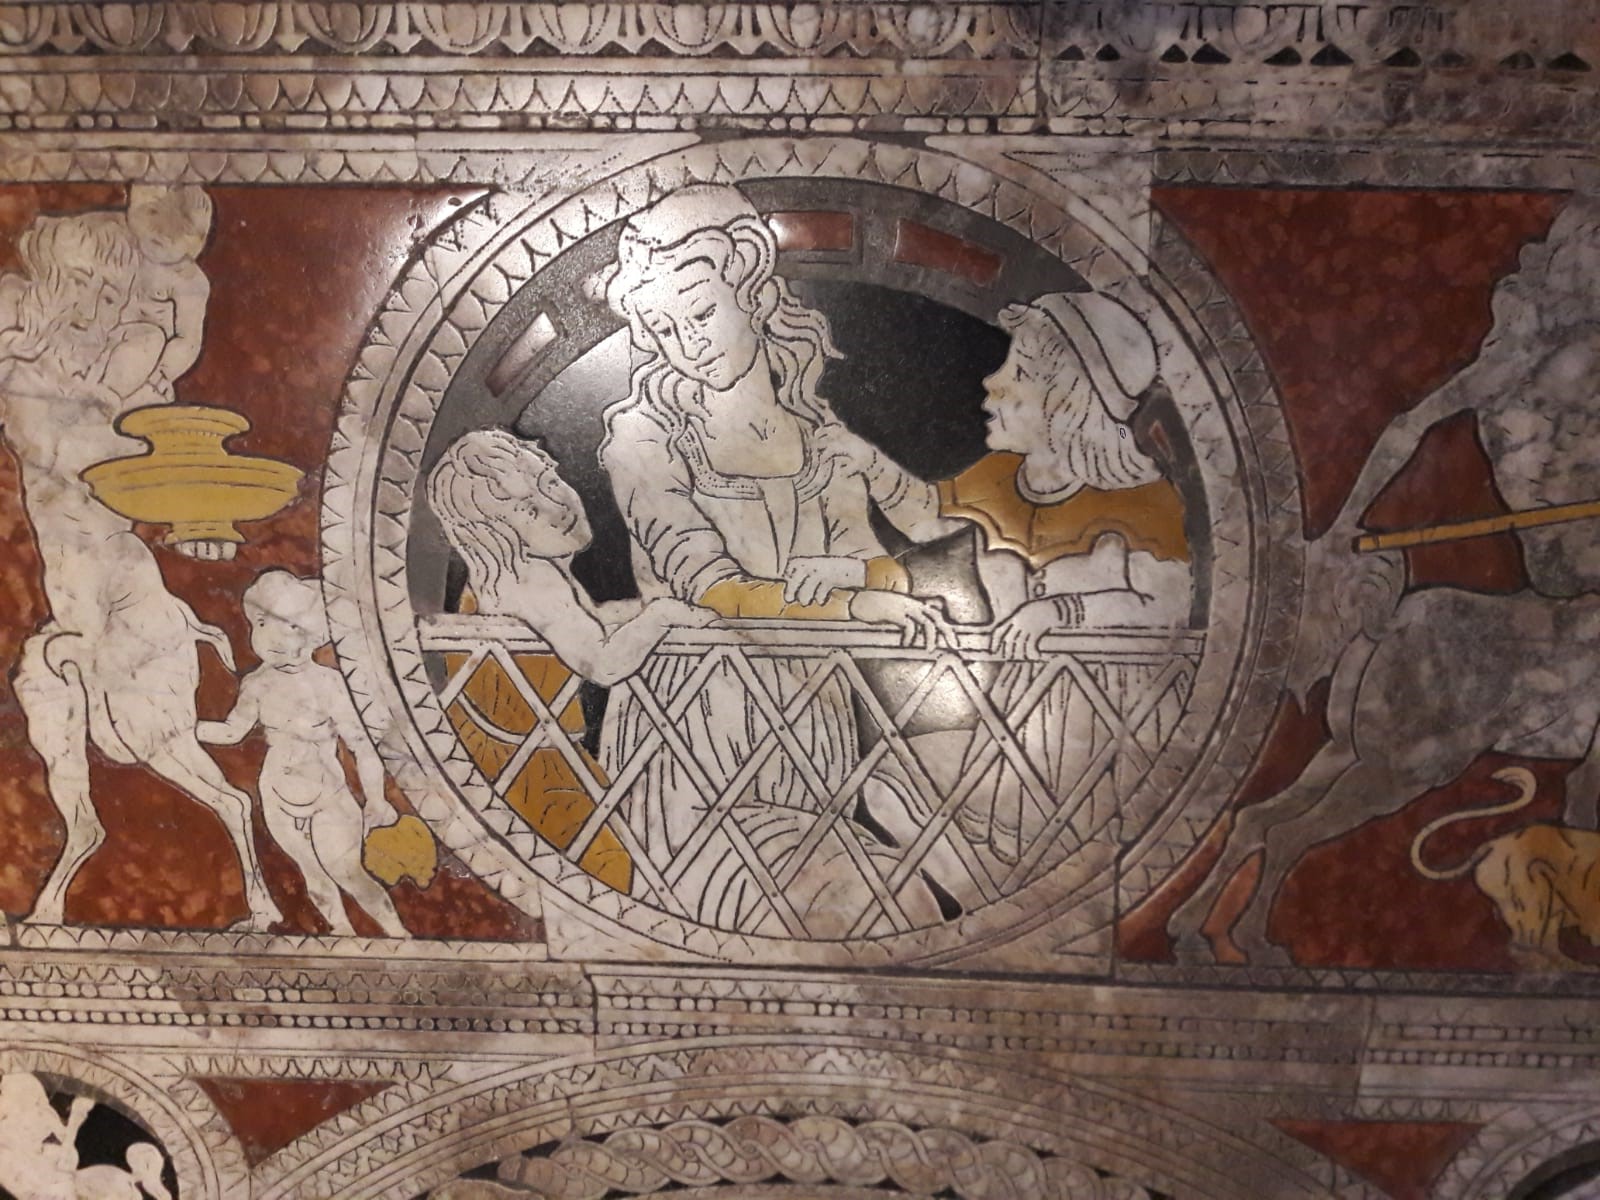 Il Duomo di Siena e il 'magnifico pavimento'